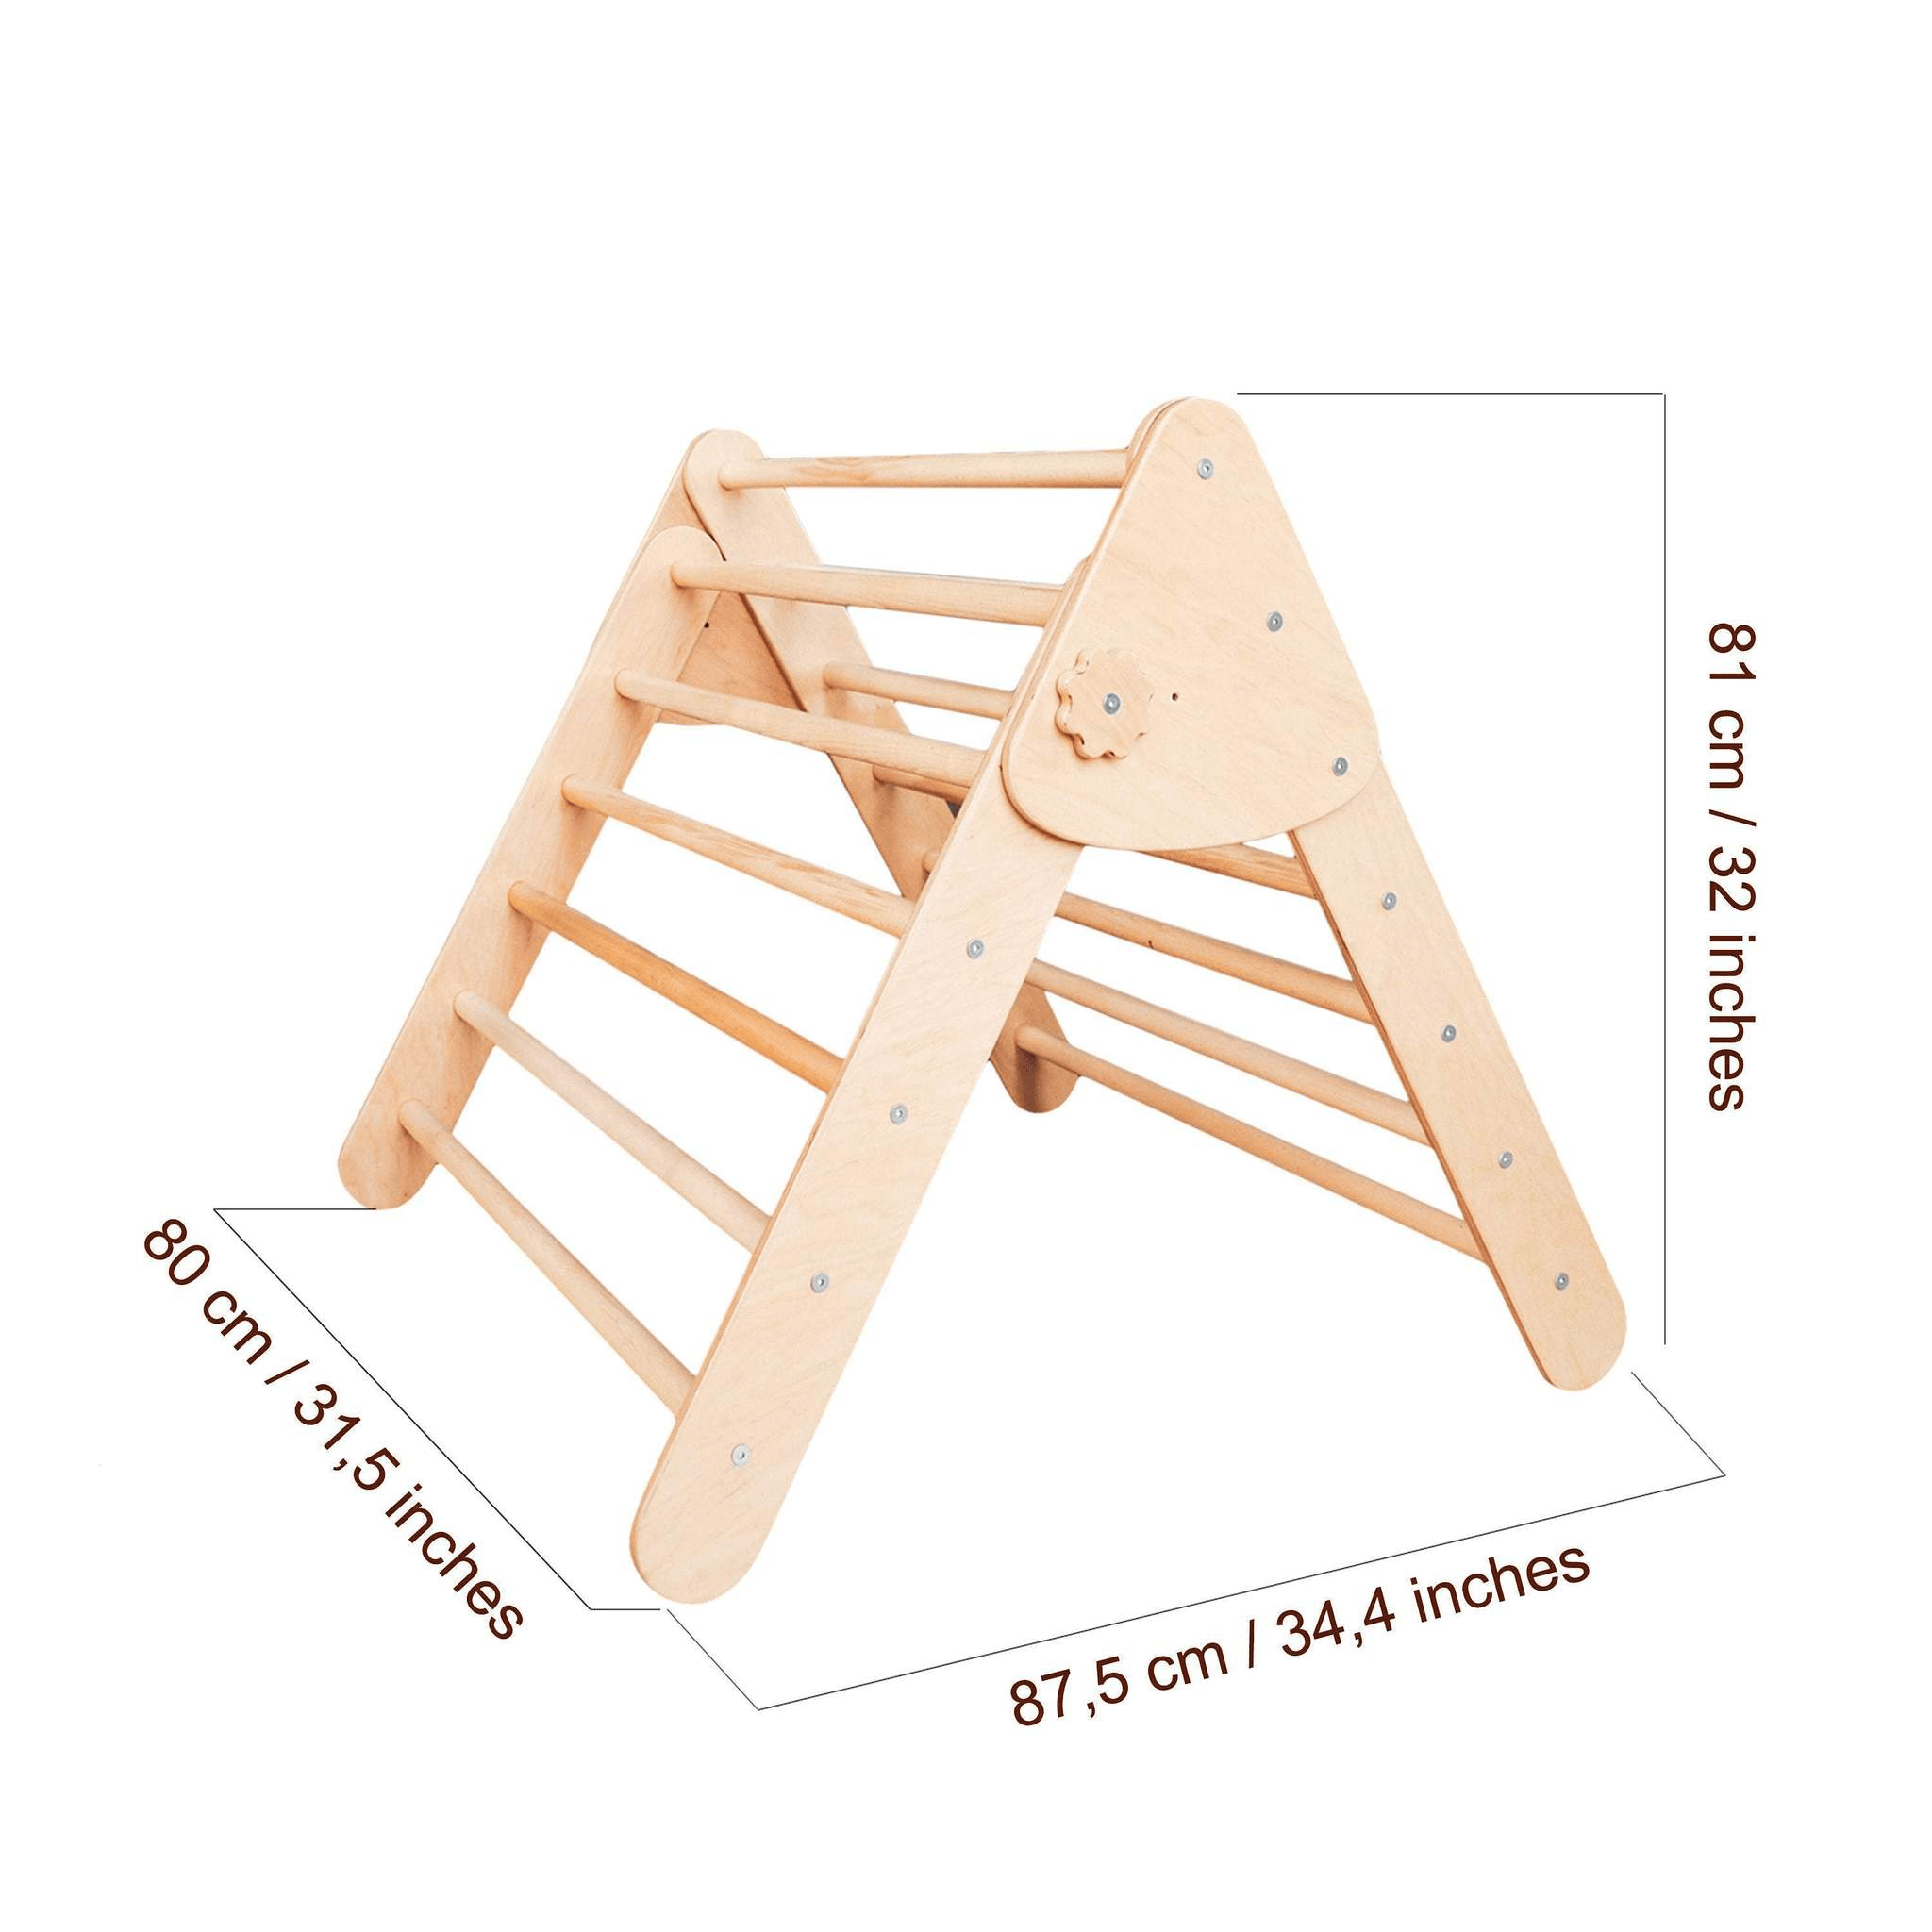 The #1 Selling Original Handmade Pikler Triangle – Montessori Climber™